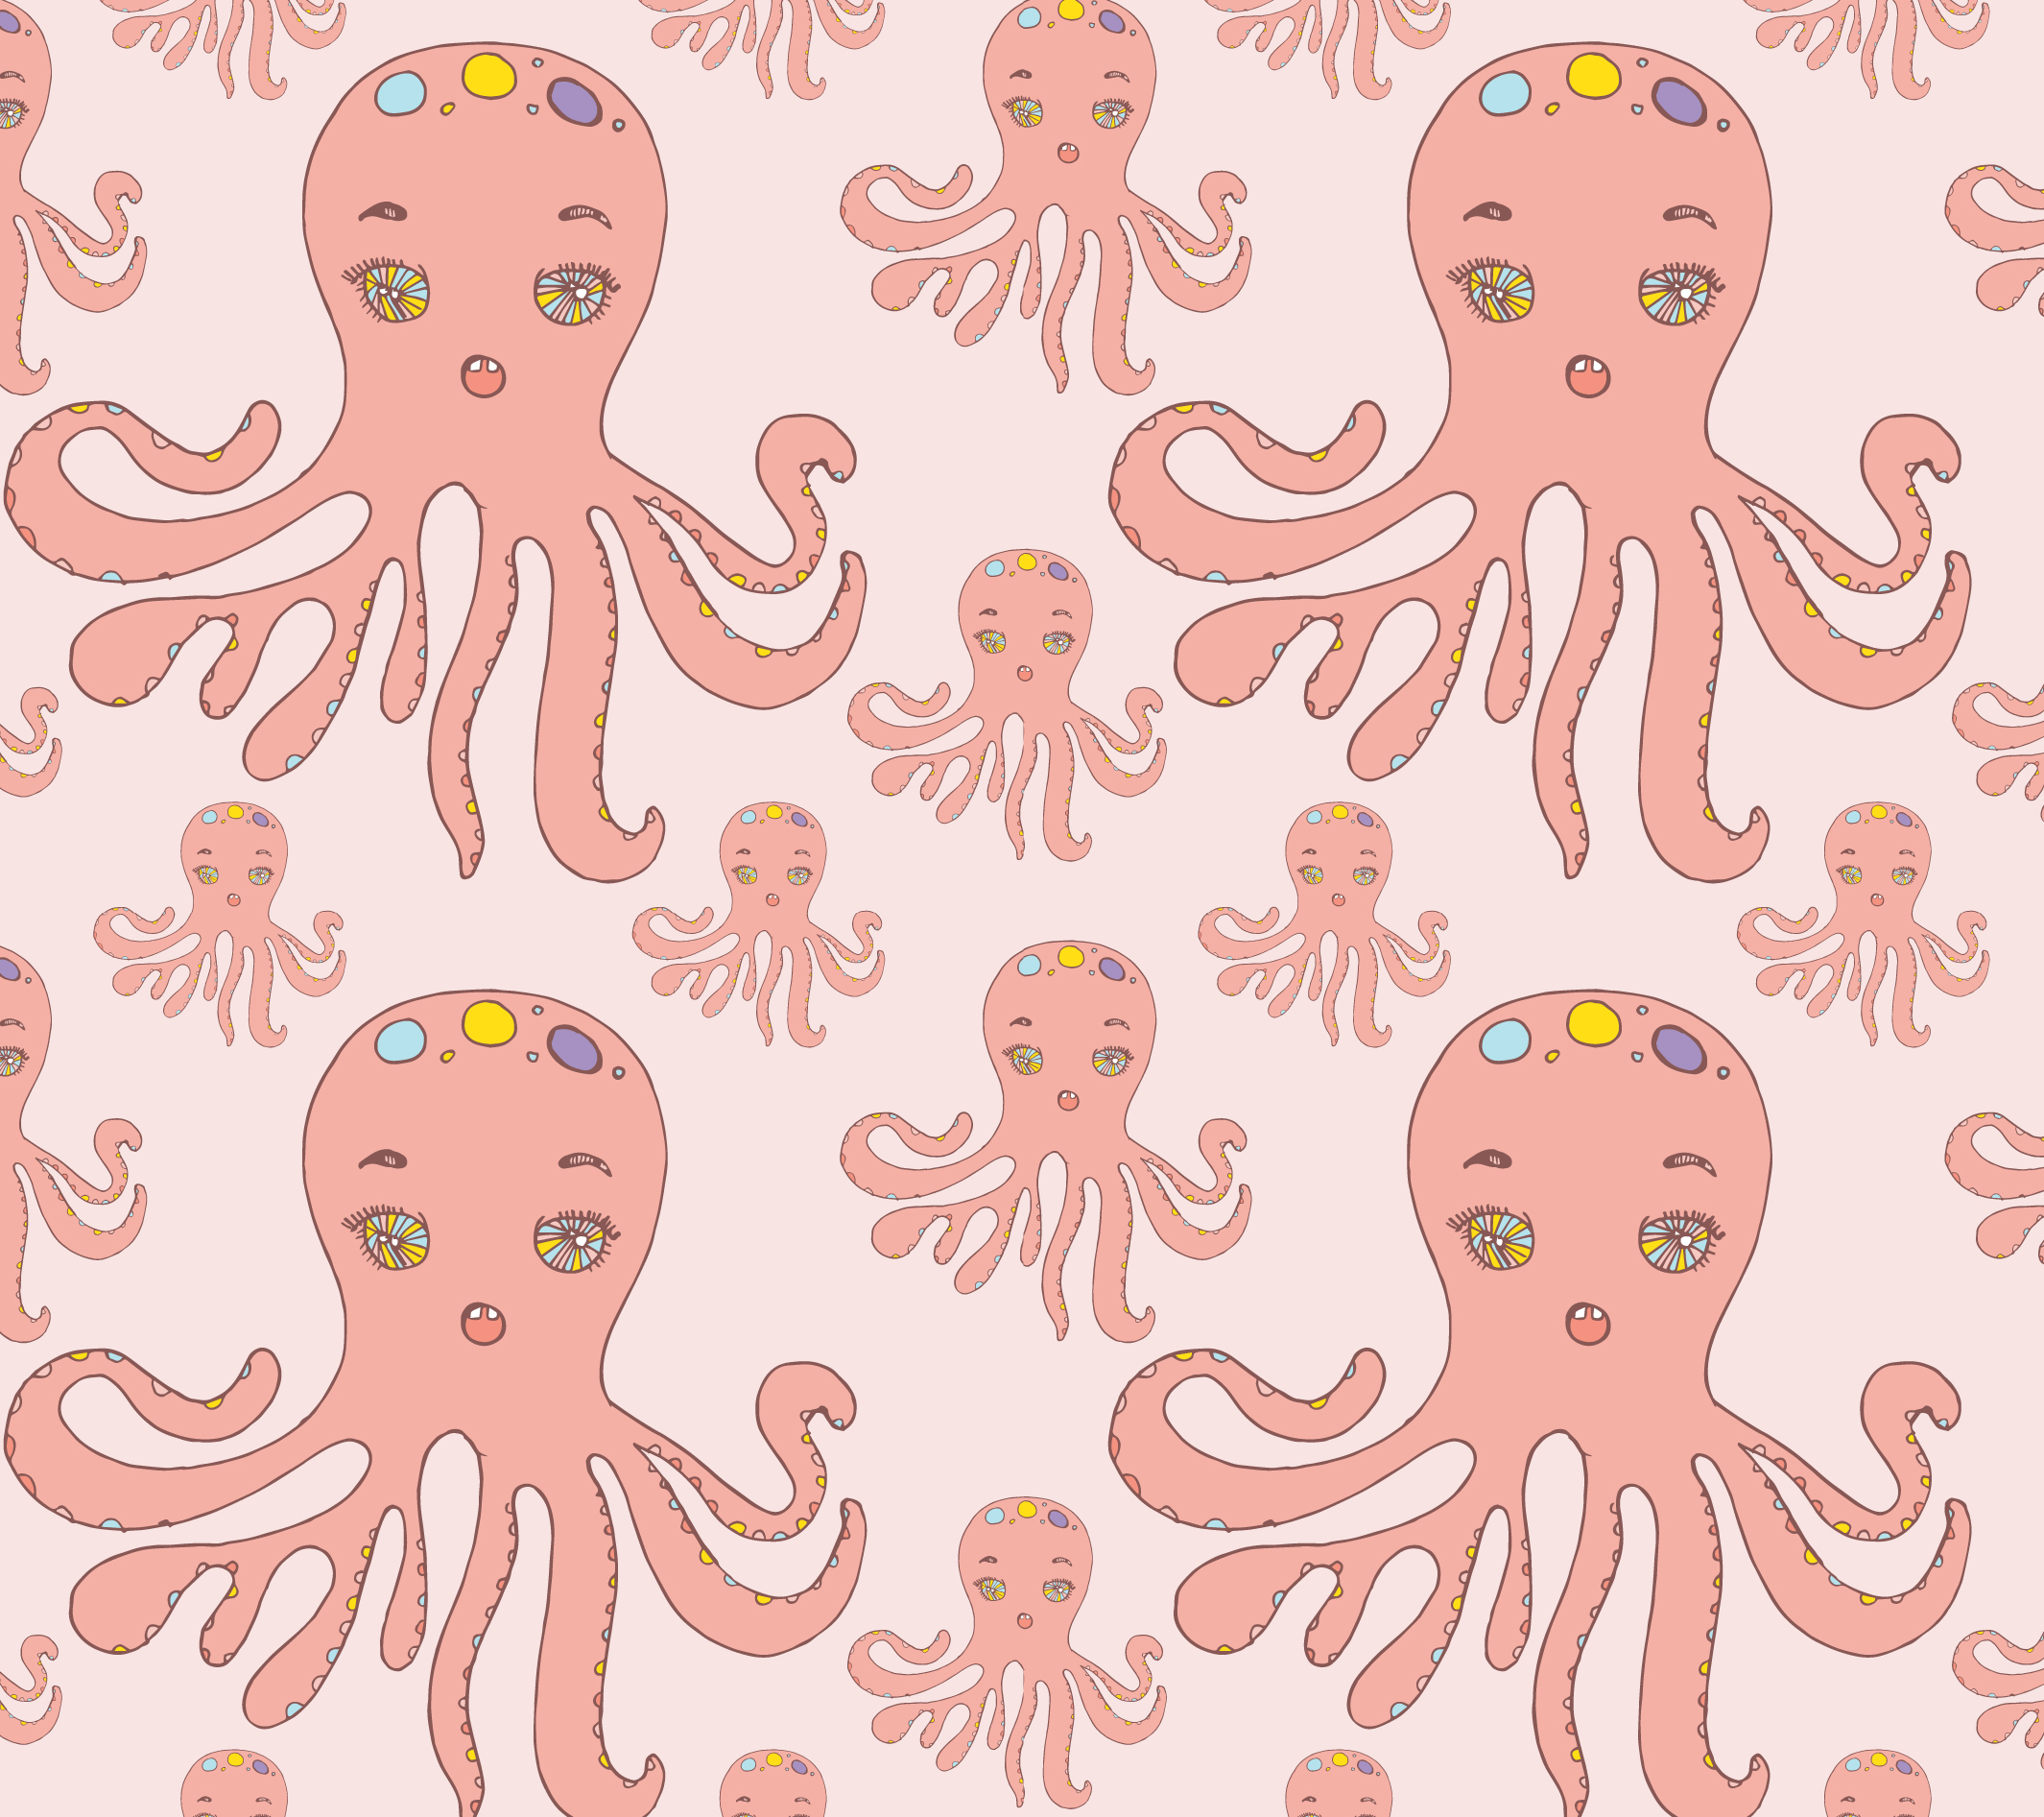 BB_octopuss.jpg